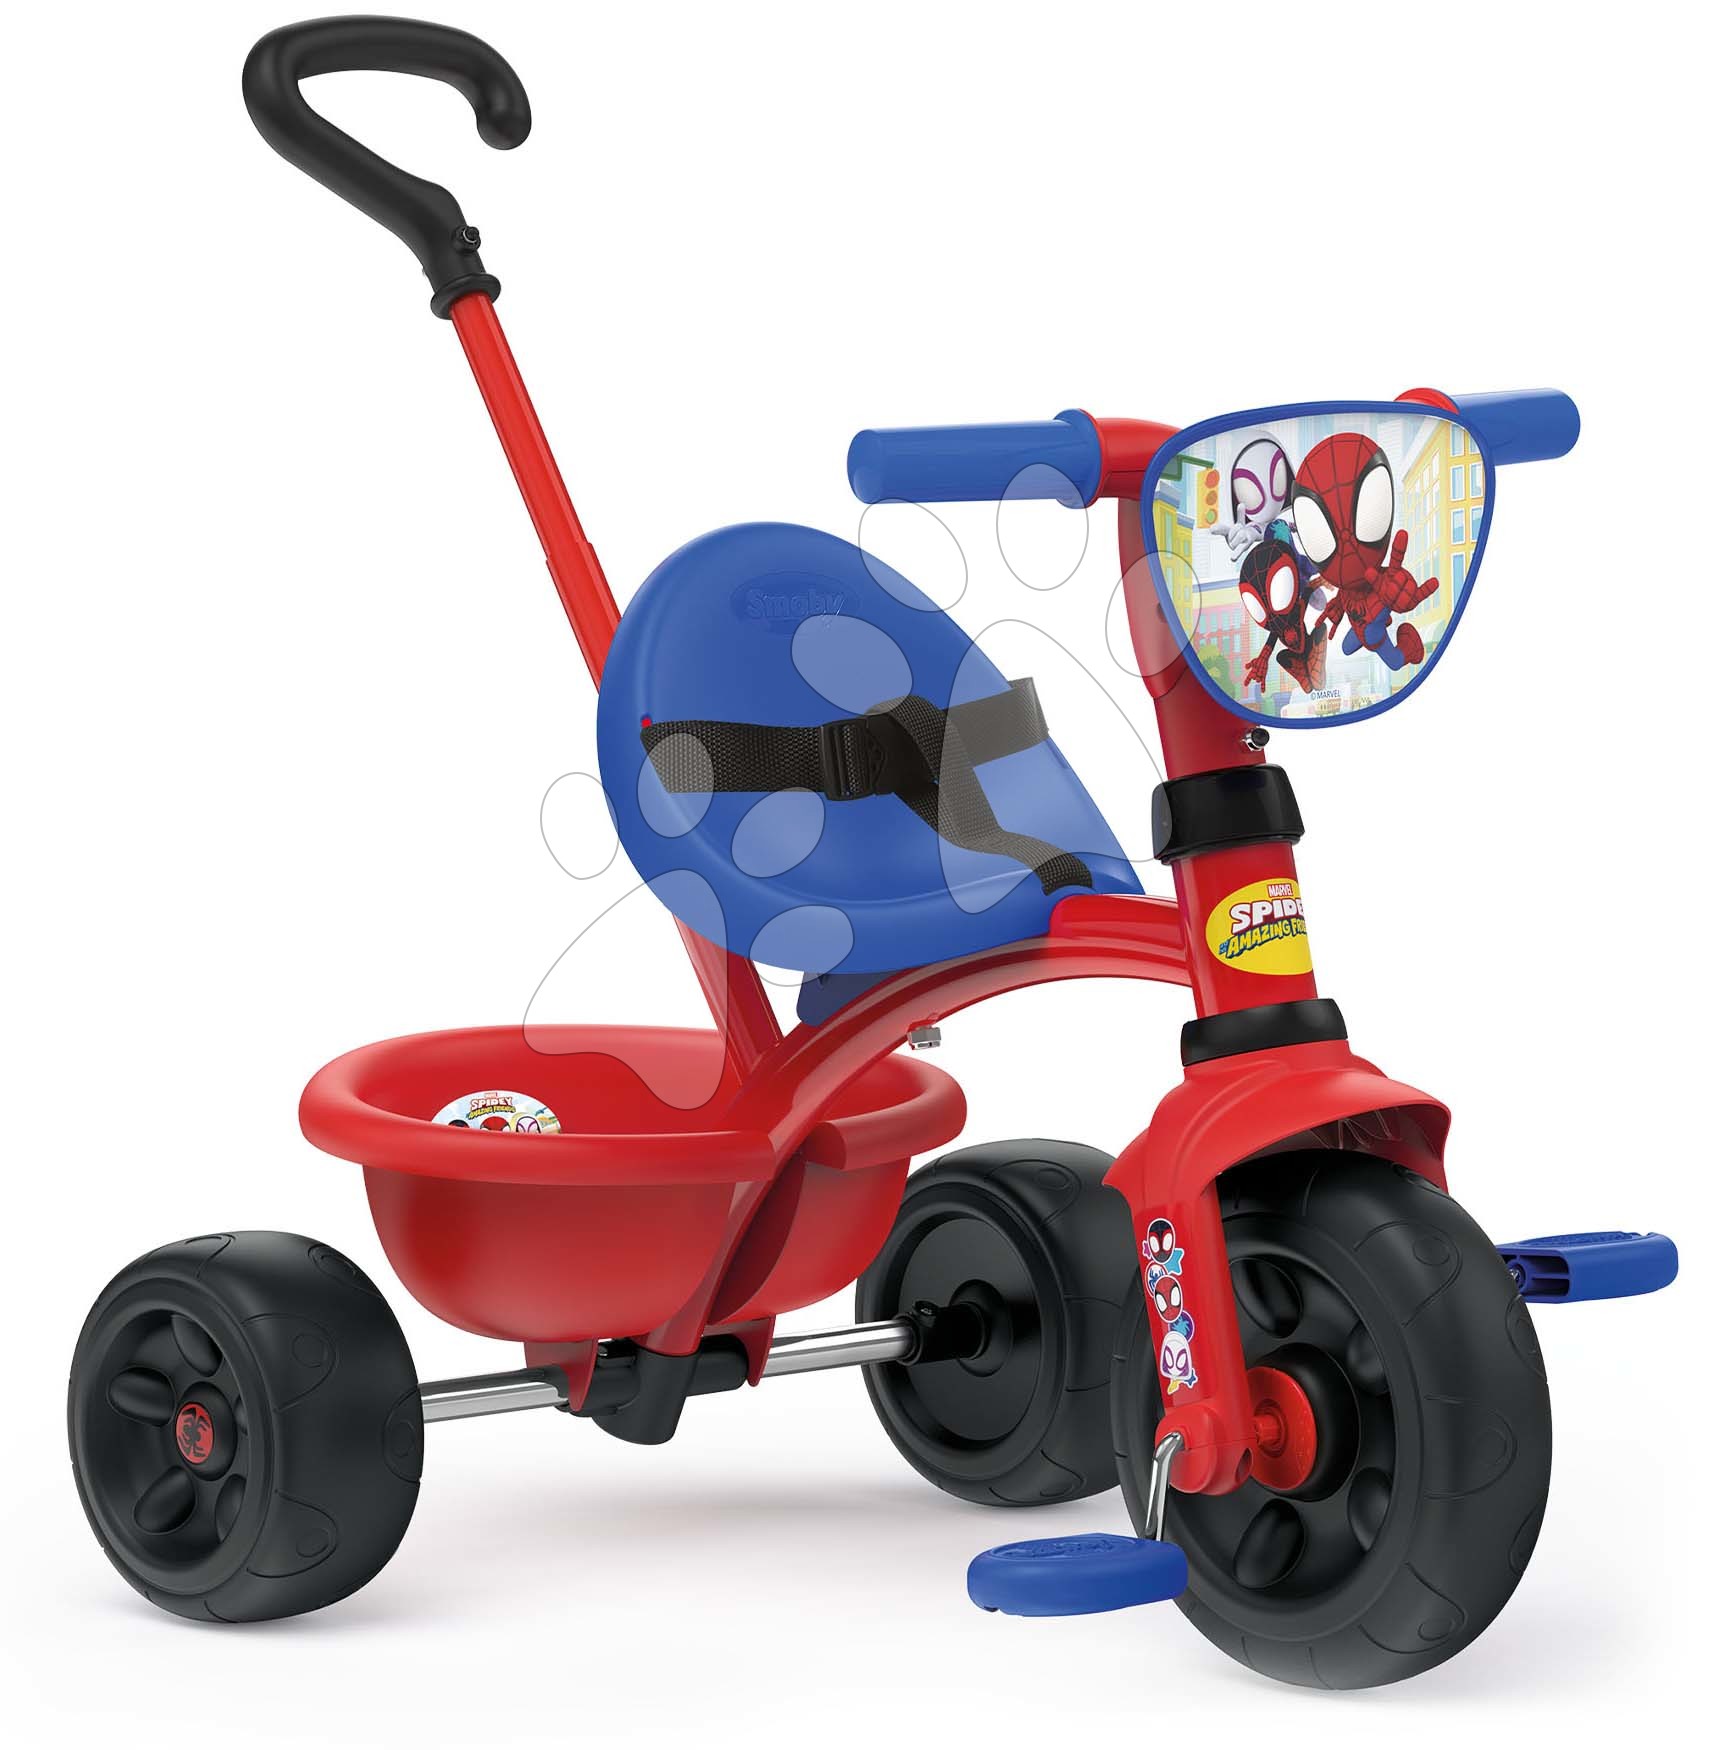 Tricicli dai 15 mesi - Triciclo Spidey Be Fun Tricycle Smoby con barra di guida e ruota folle a partire da 15 mesi